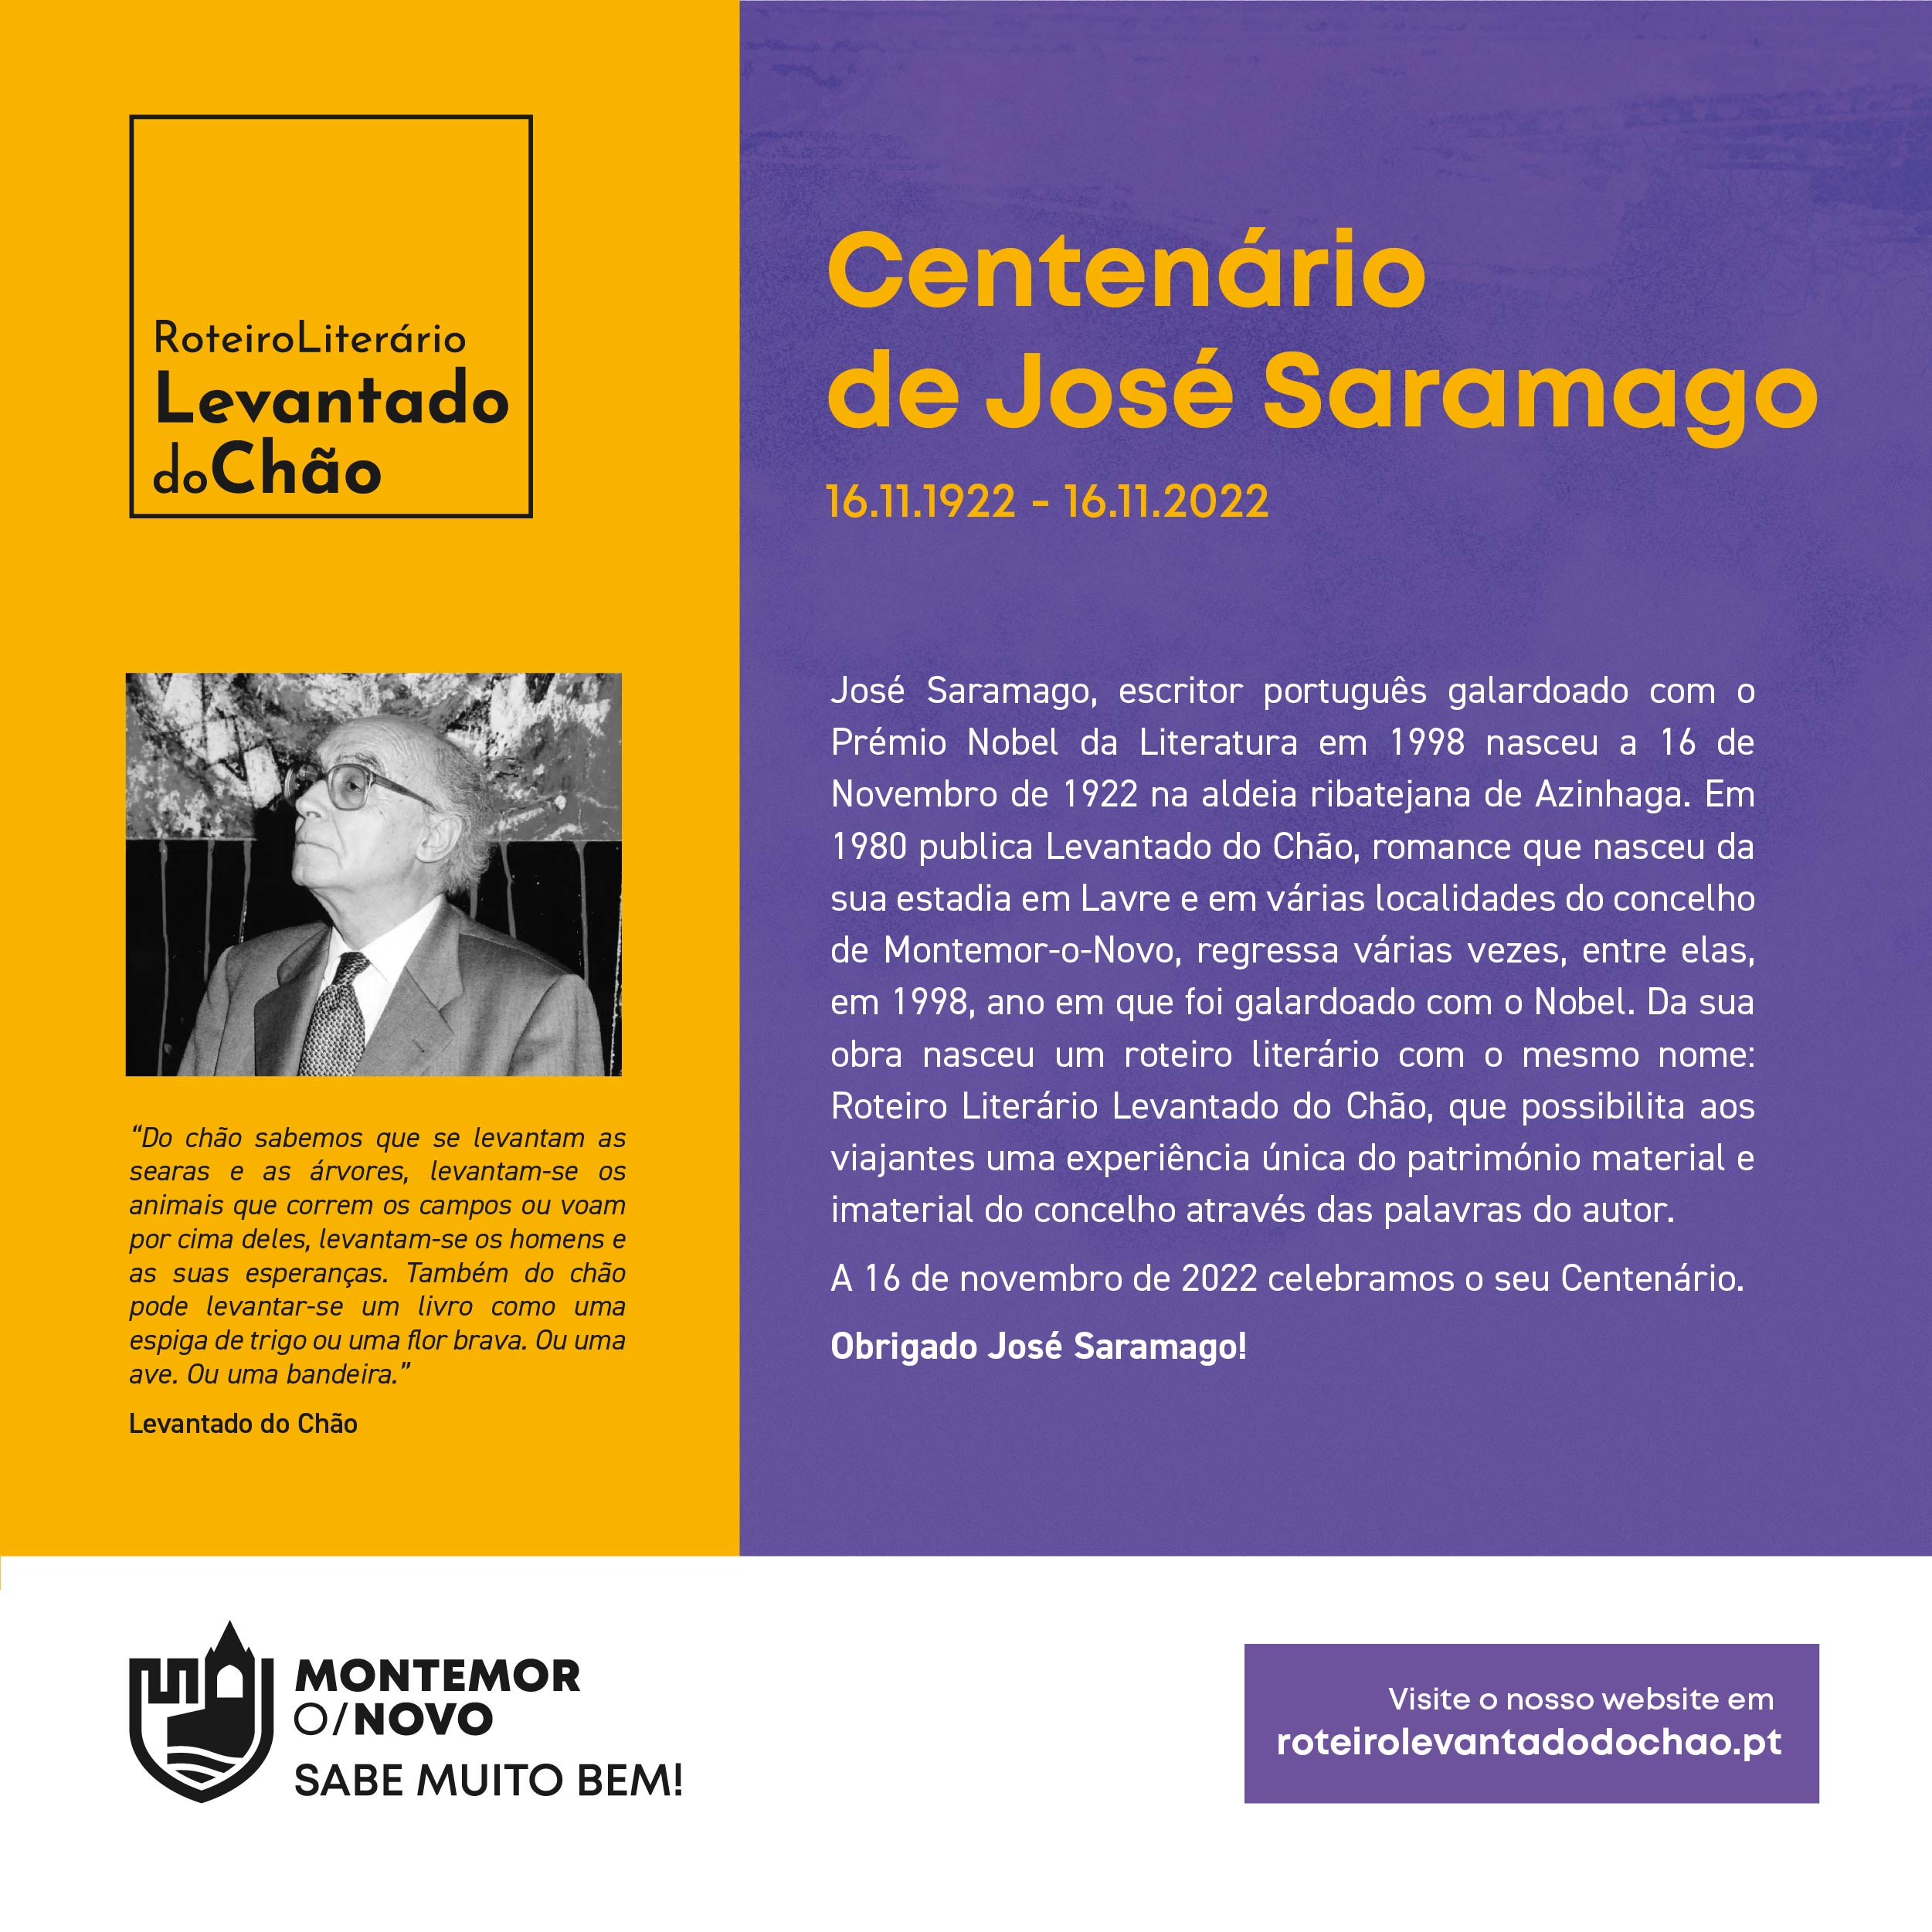 Centenário de José Saramago (16.11.1922 – 16.11.2022)